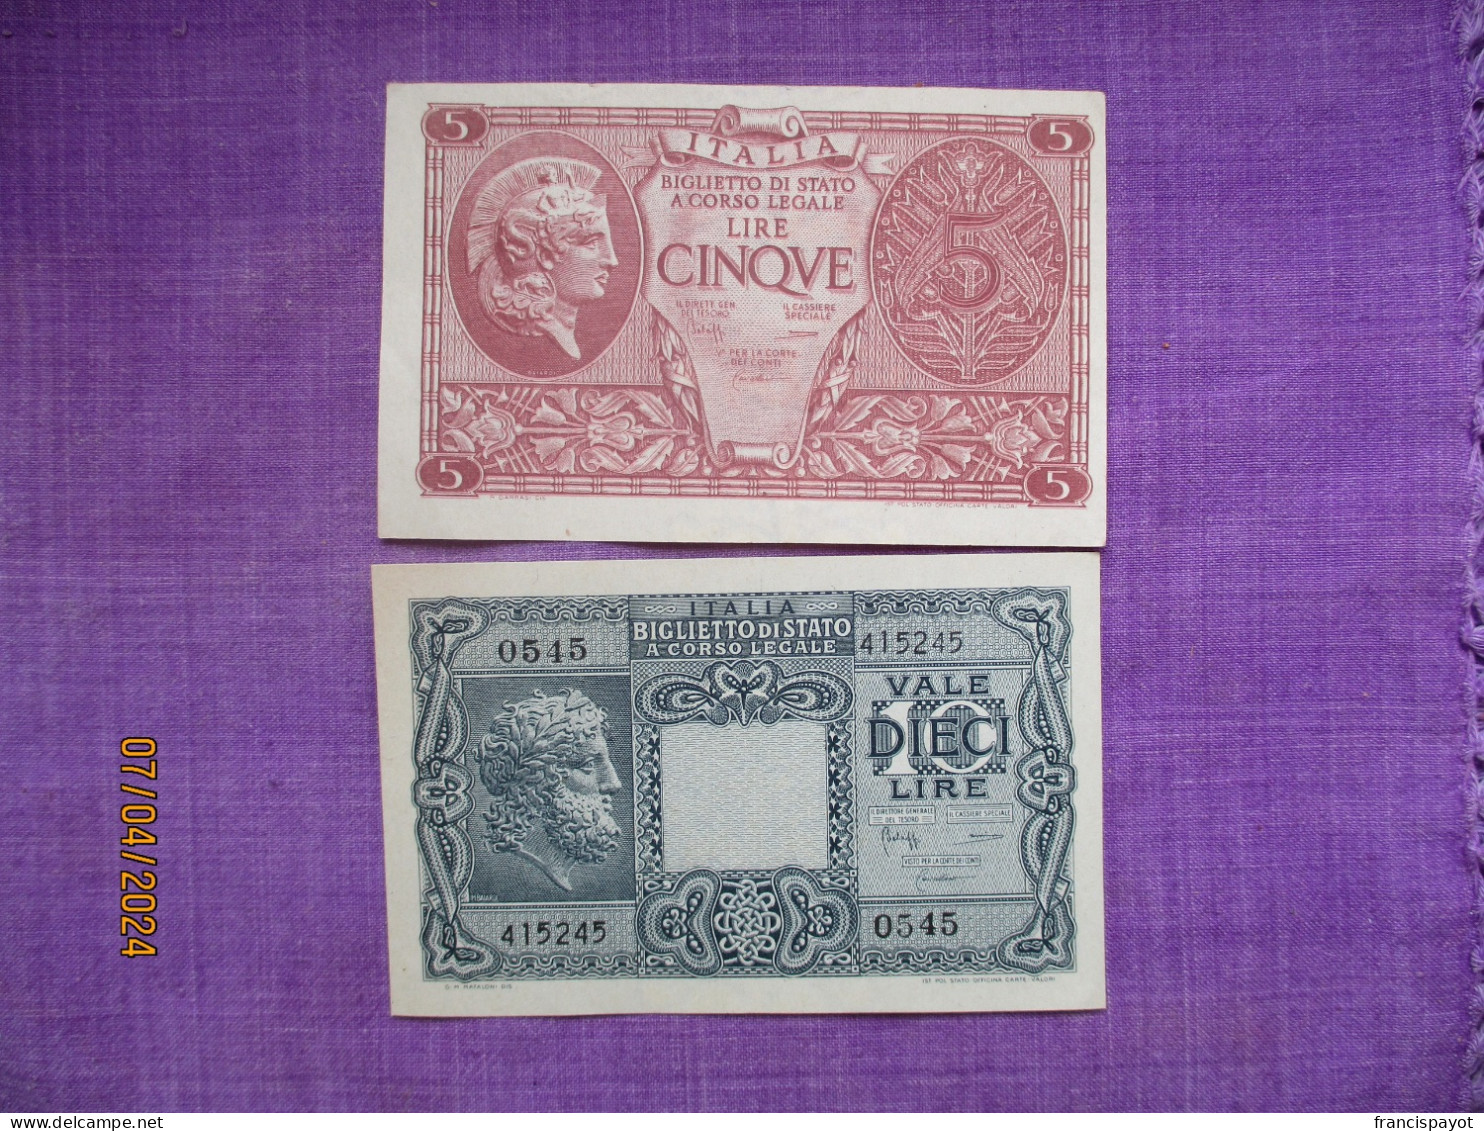 Italia Biglietti Di Stato 5 & 10 Lire 1944 - Italia – Colecciones